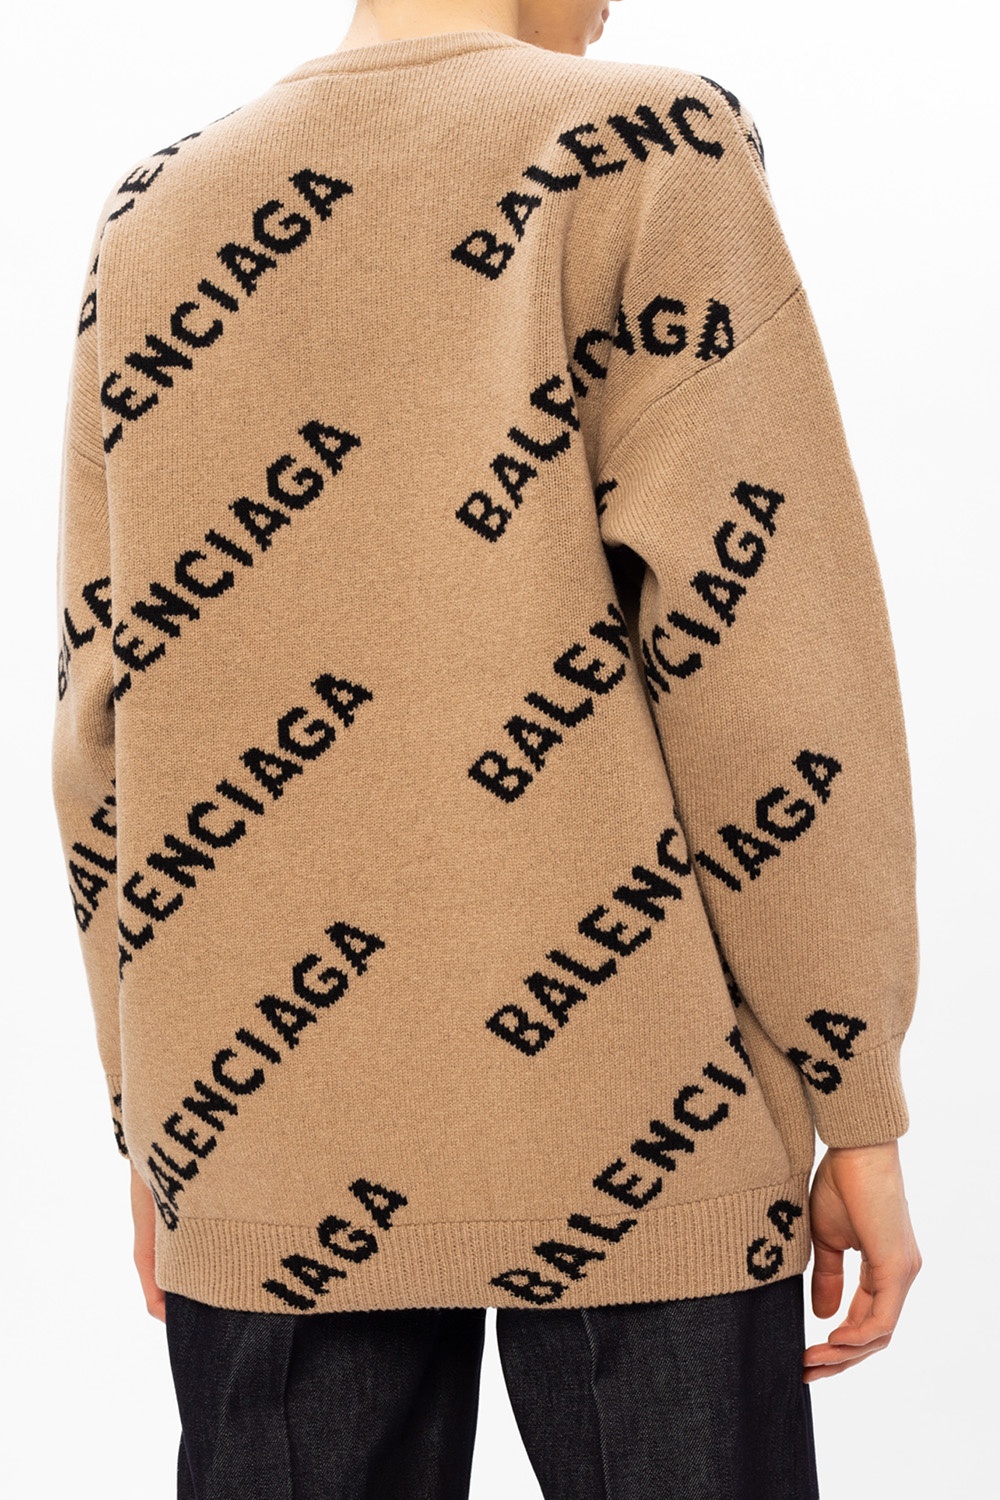 Balenciaga logo | Women's Clothing | Vitkac